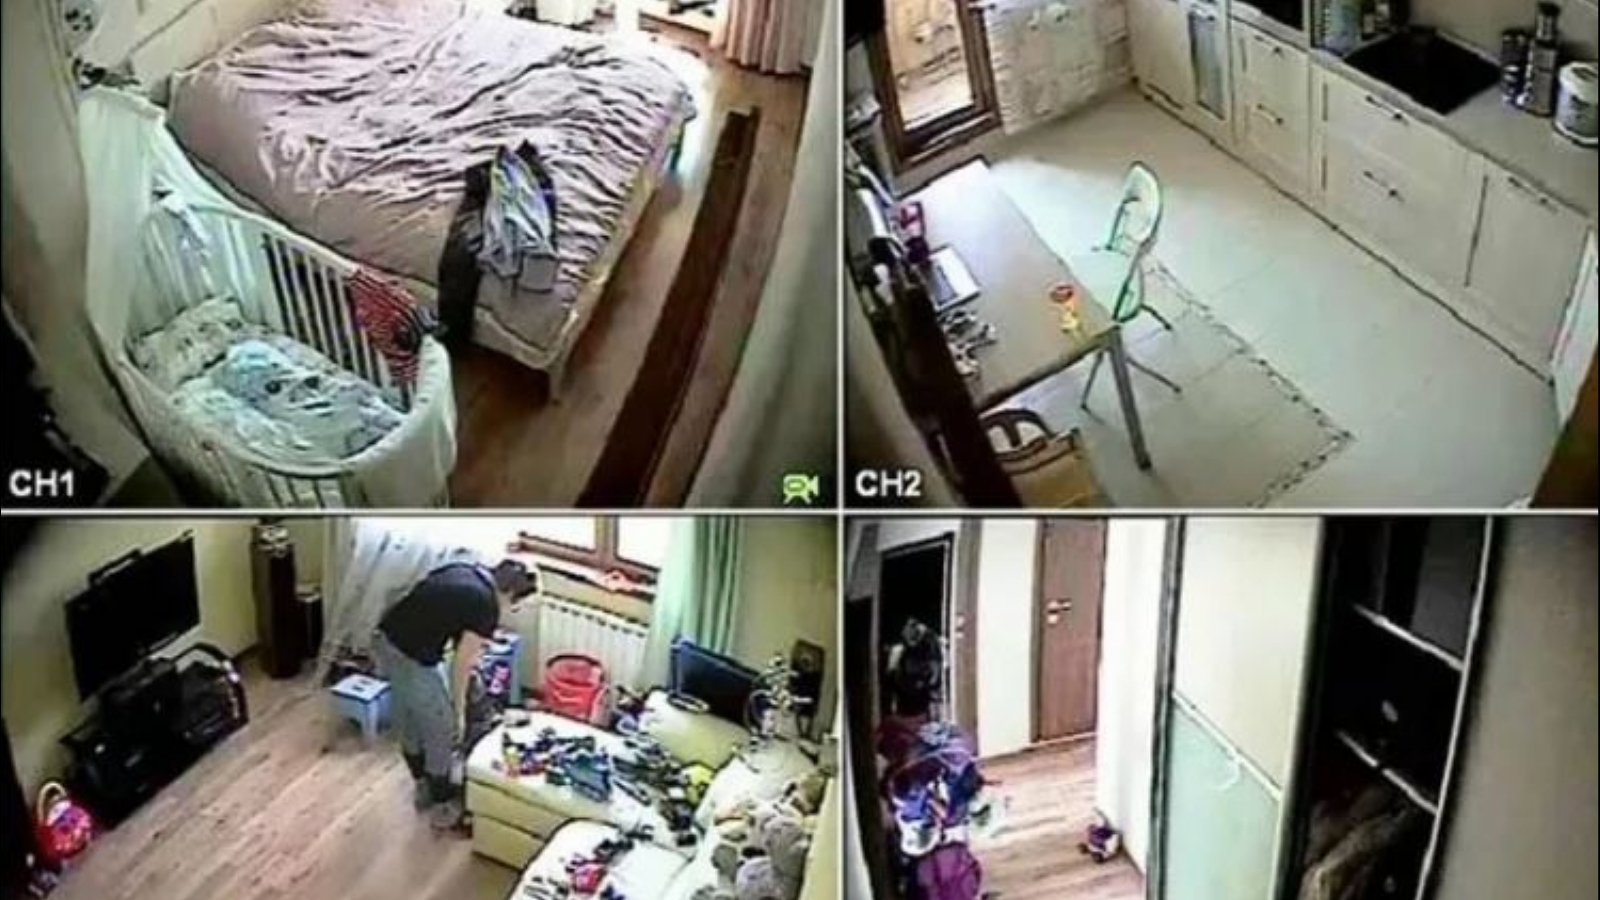 Установил скрытую камеру в комнате. Скрытые камеры в квартире. Скрытое видеонаблюдение в квартире. Скрытая видеокамера в квартире. Скрытые камеры видеонаблюдения для квартиры.